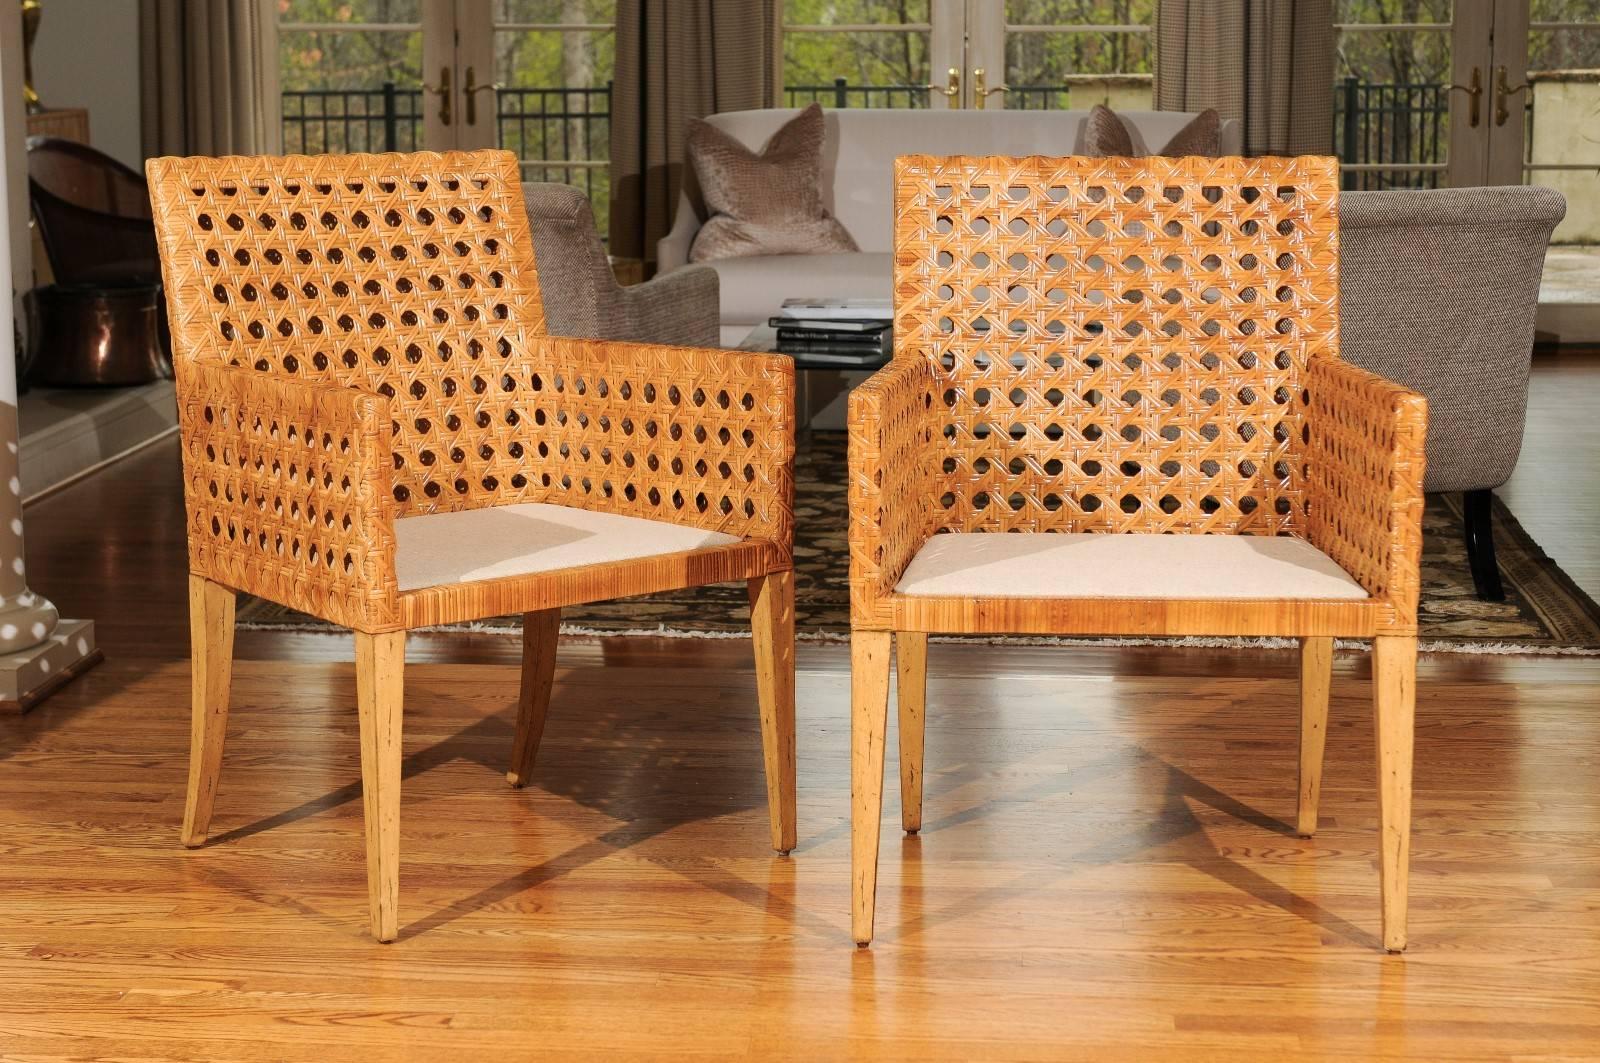 Exceptionnelle paire de chaises à accoudoirs ou de chaises de salle à manger à grande échelle, vers 1975. Cadre en bois dur robuste soigneusement enveloppé de canne à double face. Une qualité et des détails fabuleux. Vieilli à la perfection absolue.